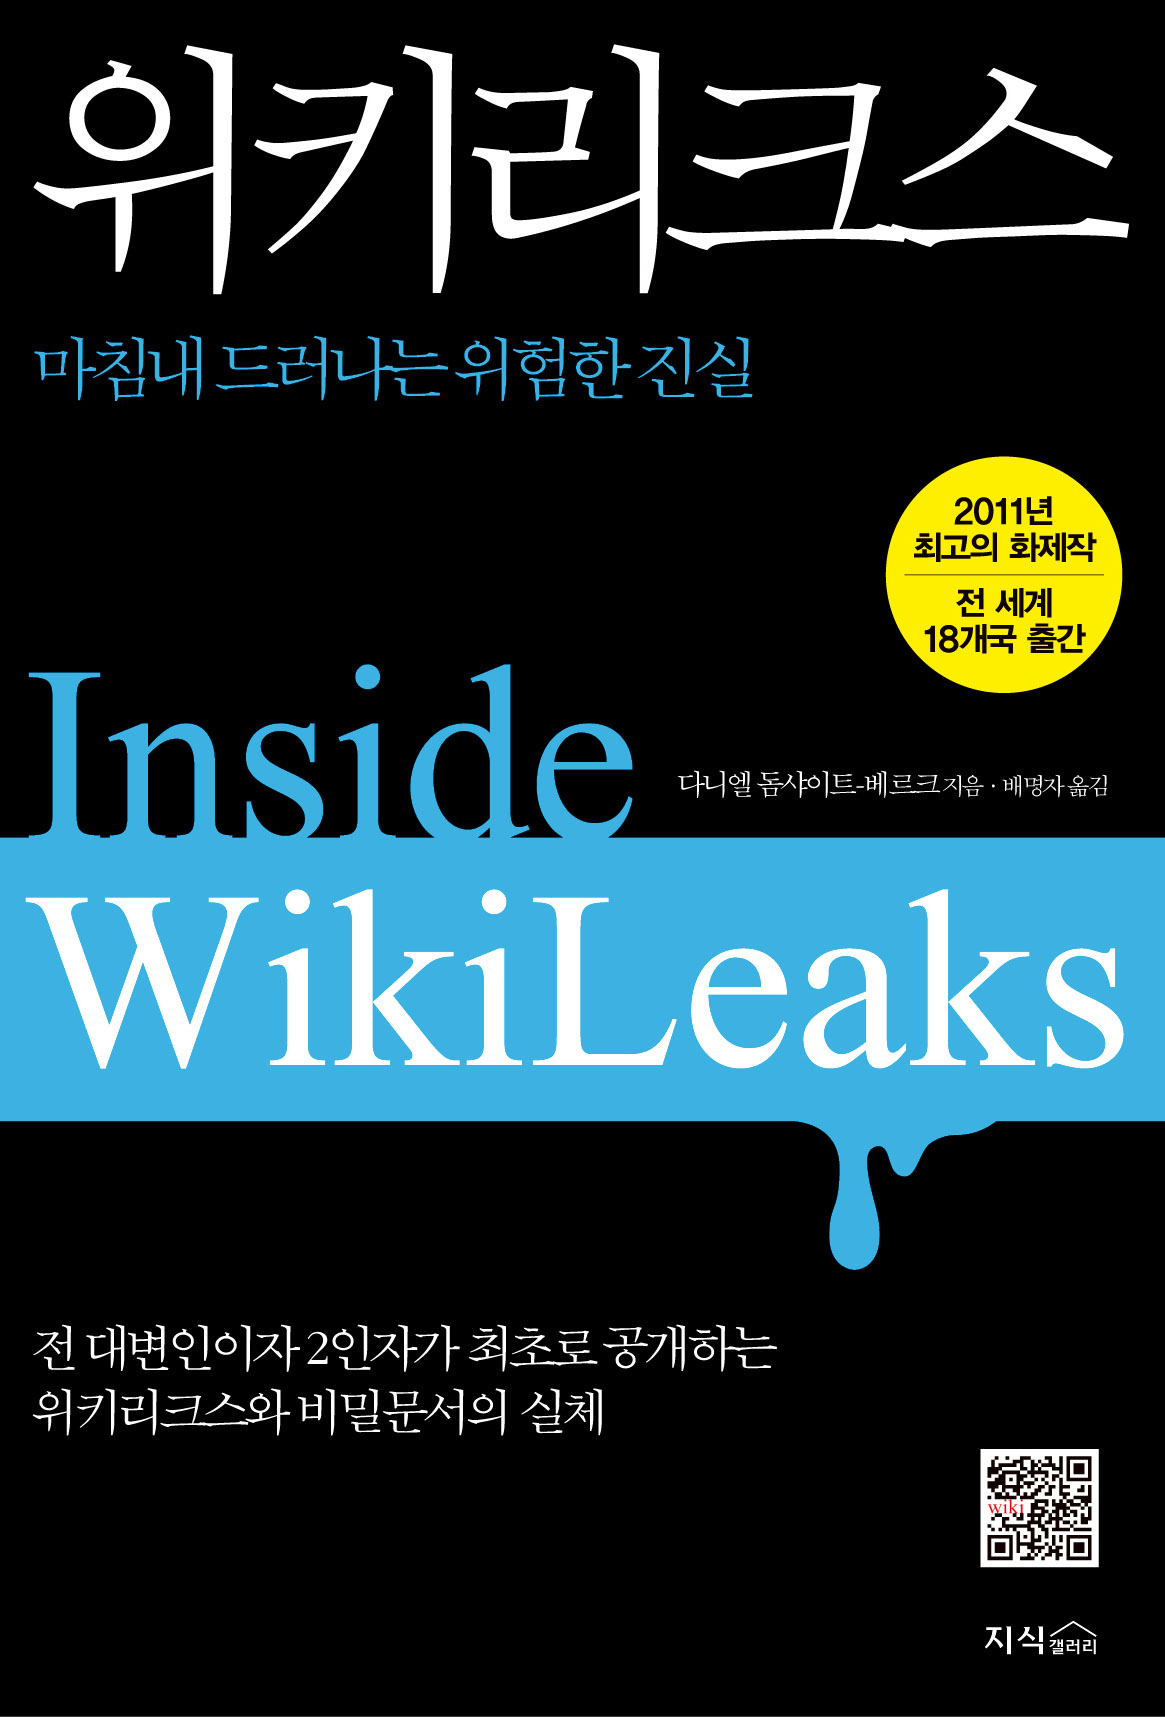 위키리크스:마침내드러나는위험한진실